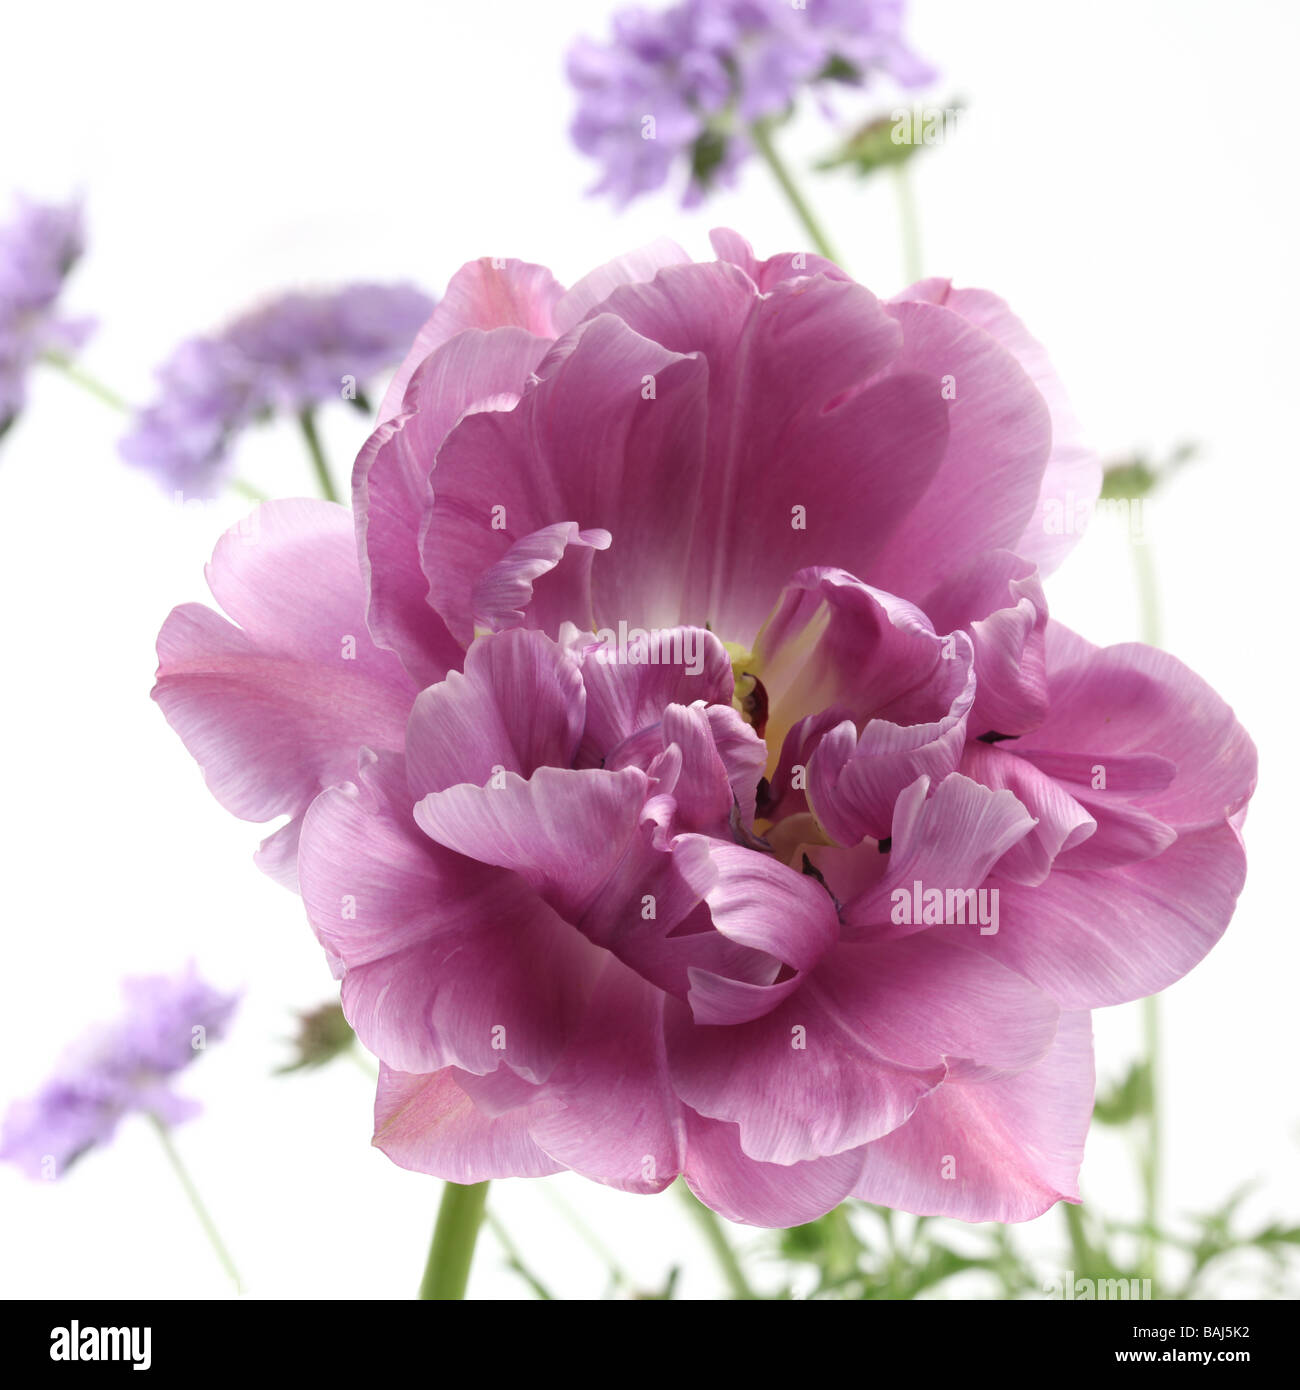 Tulip tulipa lilla perfezione su uno sfondo bianco preso in un studio con fiori malva nella distanza Foto Stock